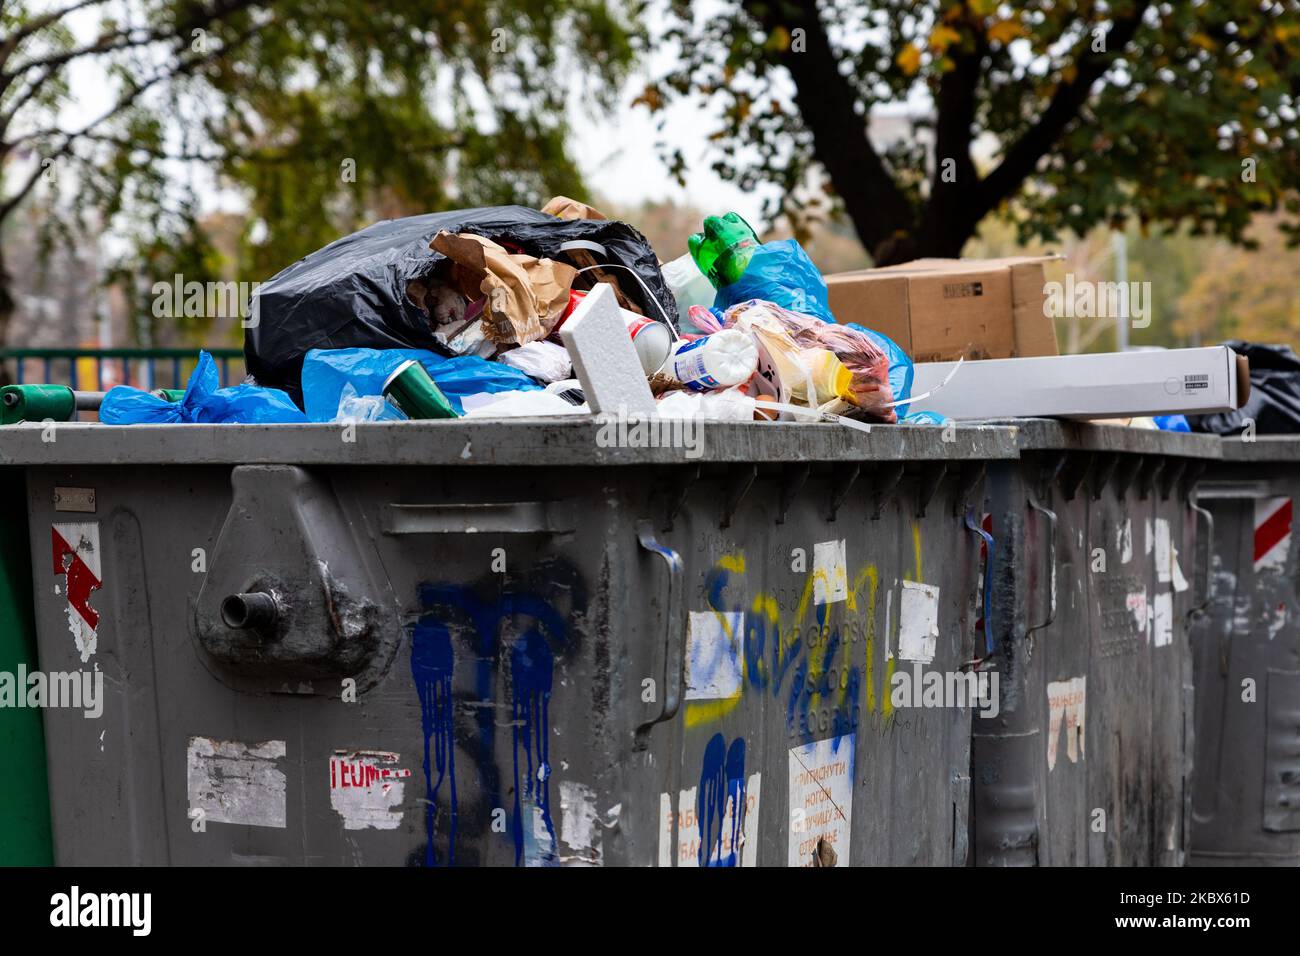 Belgrade, Serbie - 02 novembre 2022 : benne pleine de déchets. Les ordures tombent partout. Arrêter la pollution, commencer le recyclage et sauver notre planète Banque D'Images